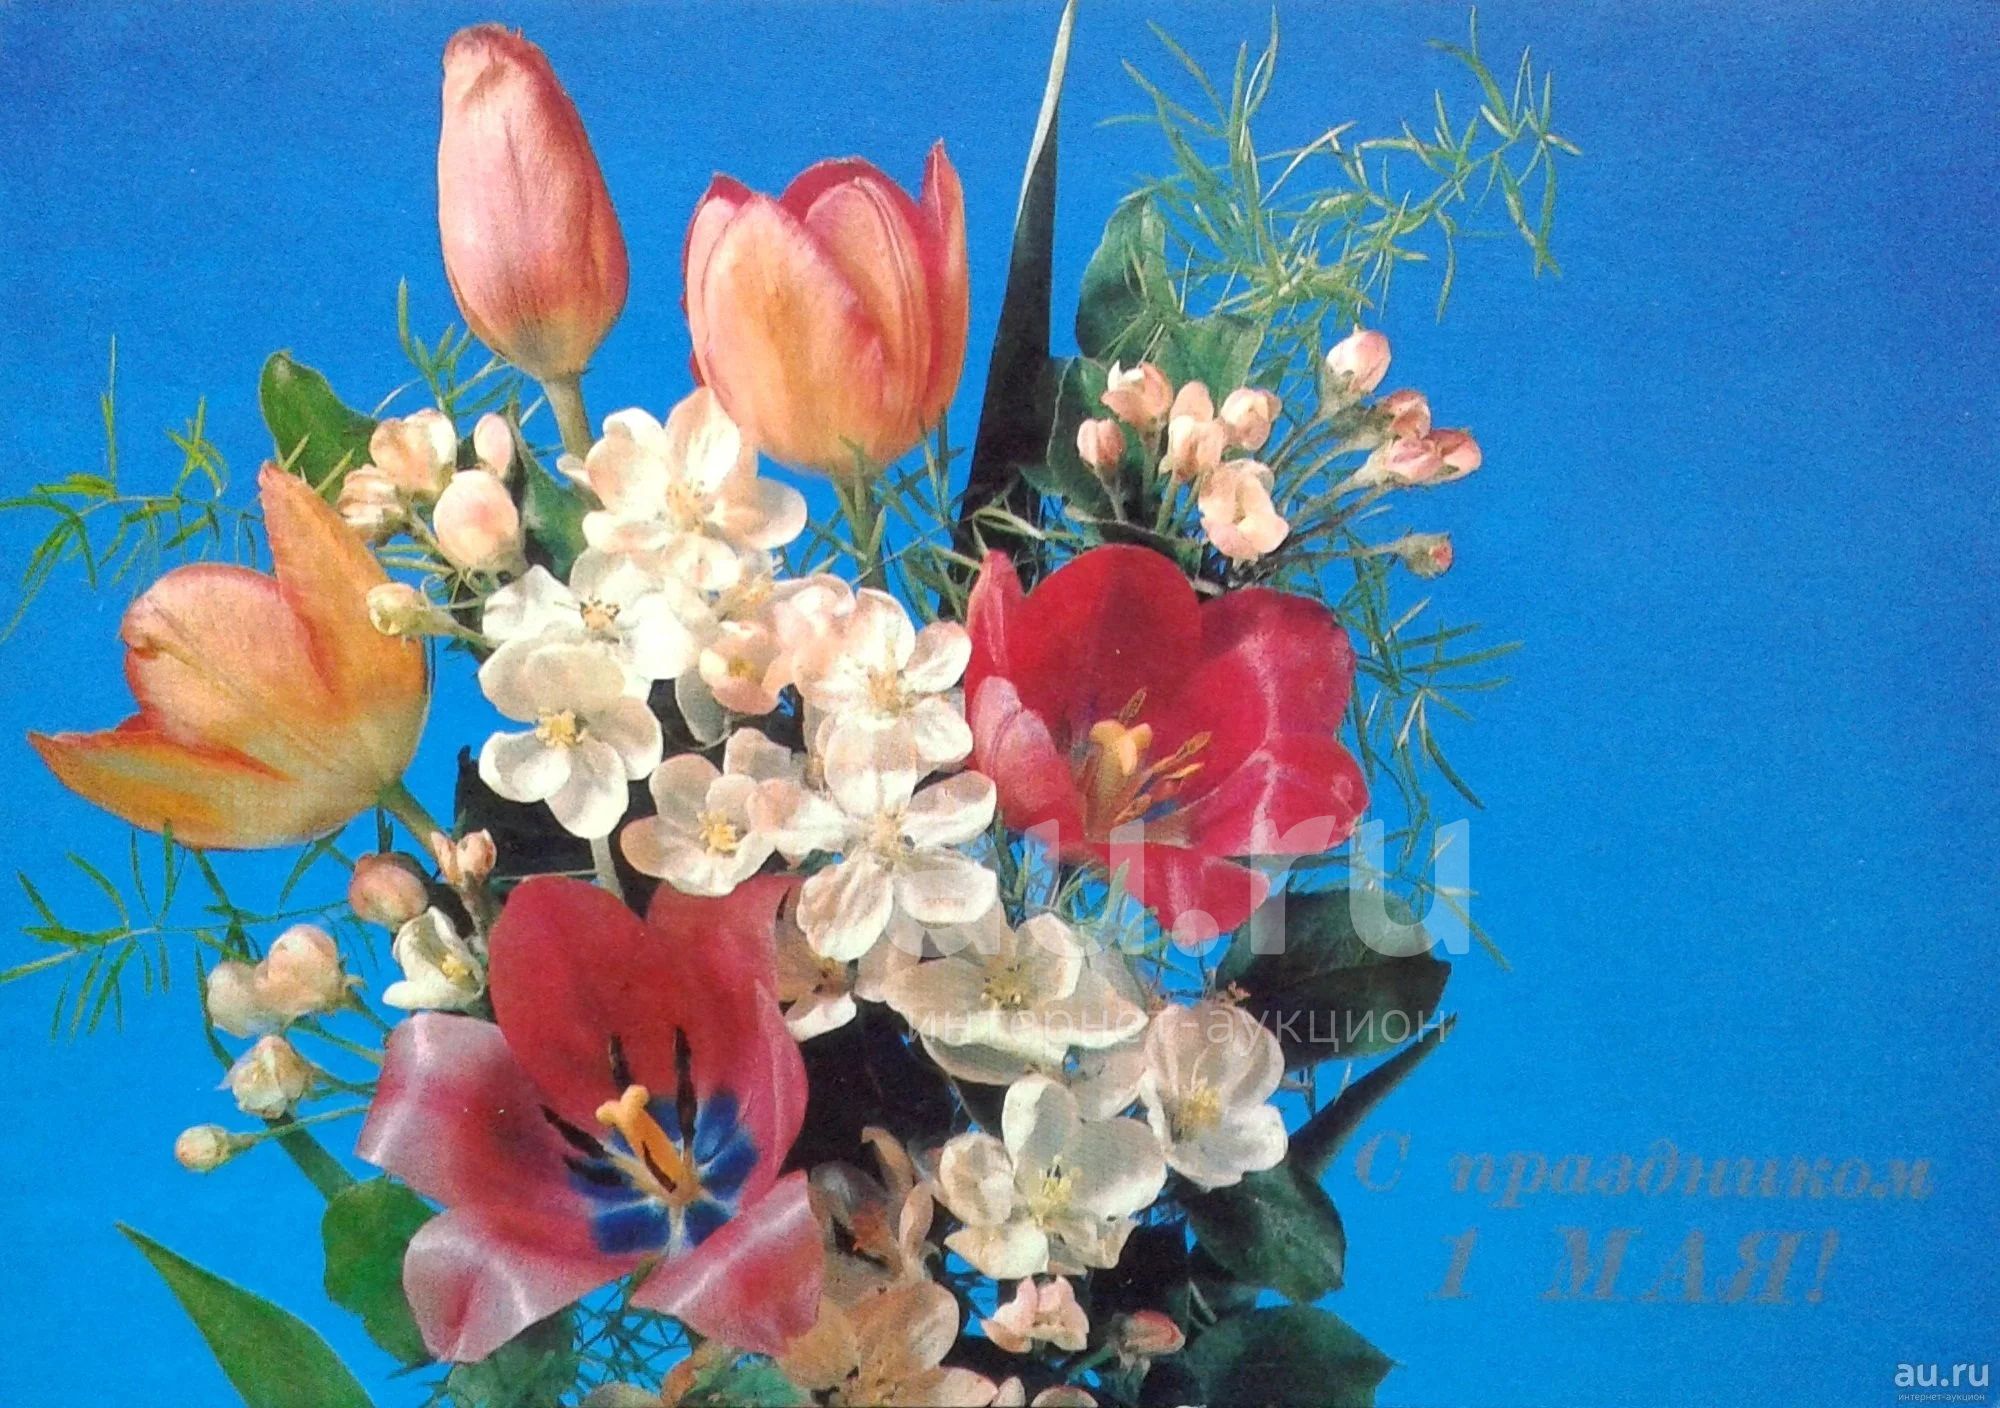 Альбомы 1 мая. Открытка цветы. Старые советские открытки с цветами. Первомай цветы. 1 Мая праздник.